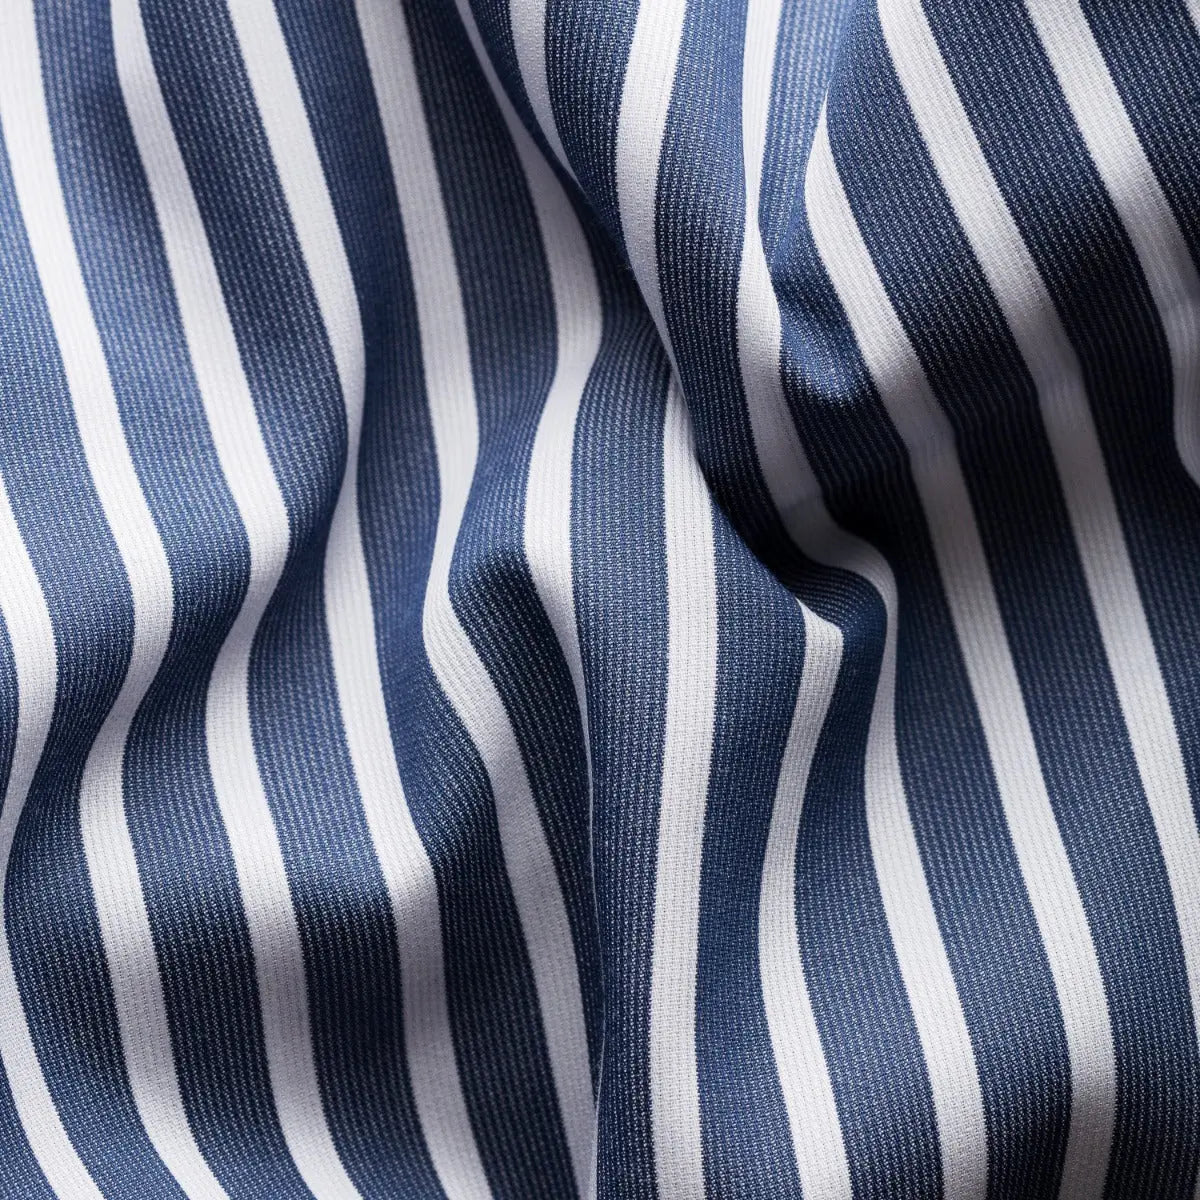 Blue Striped Piqué Contemporary Fit Shirt  Eton   